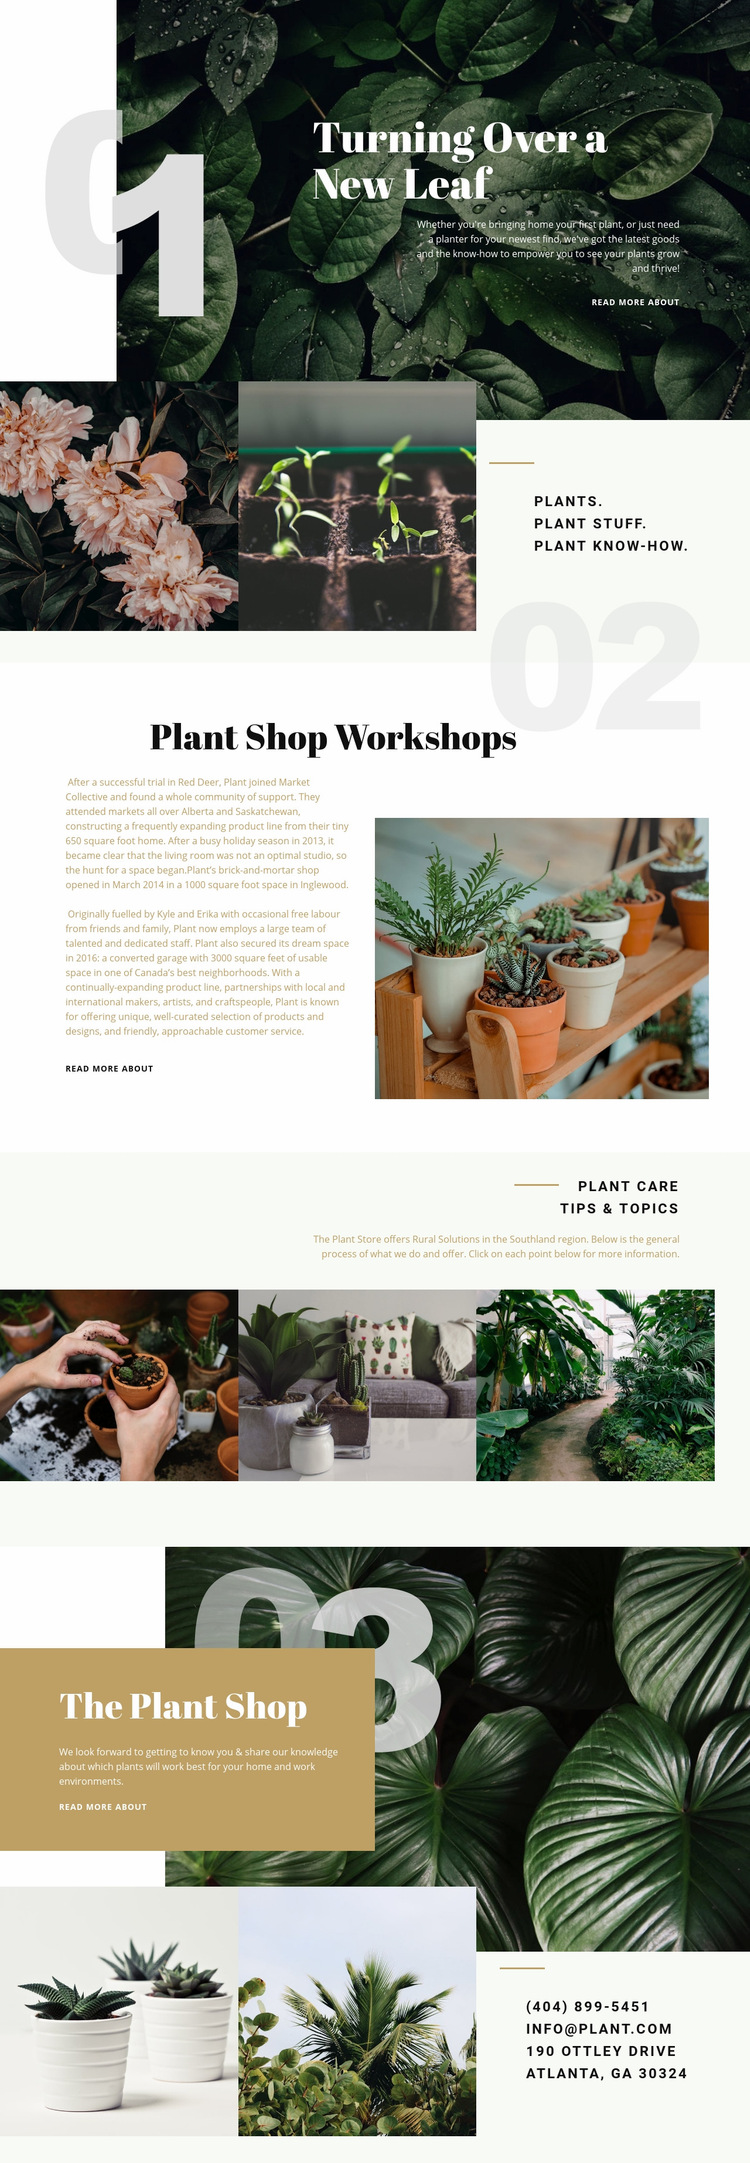 Plant Shop Web Page Design